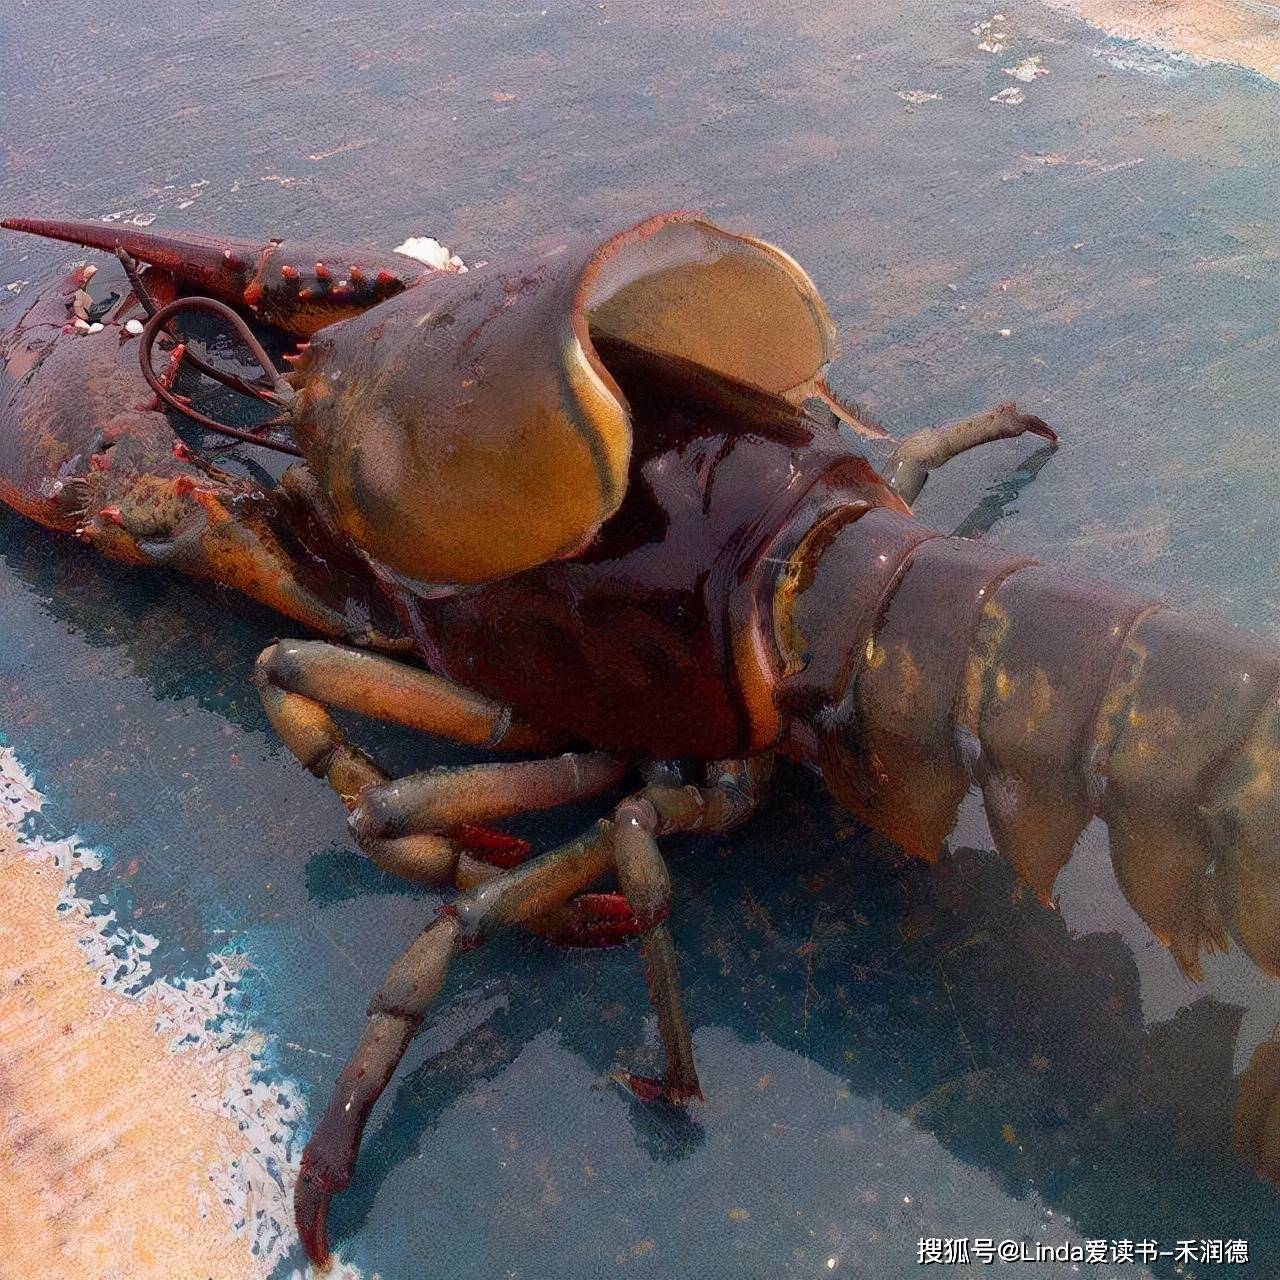 小龙虾蜕壳甲壳类动物的生活史中存在多次蜕皮,使甲壳类动物的变态和